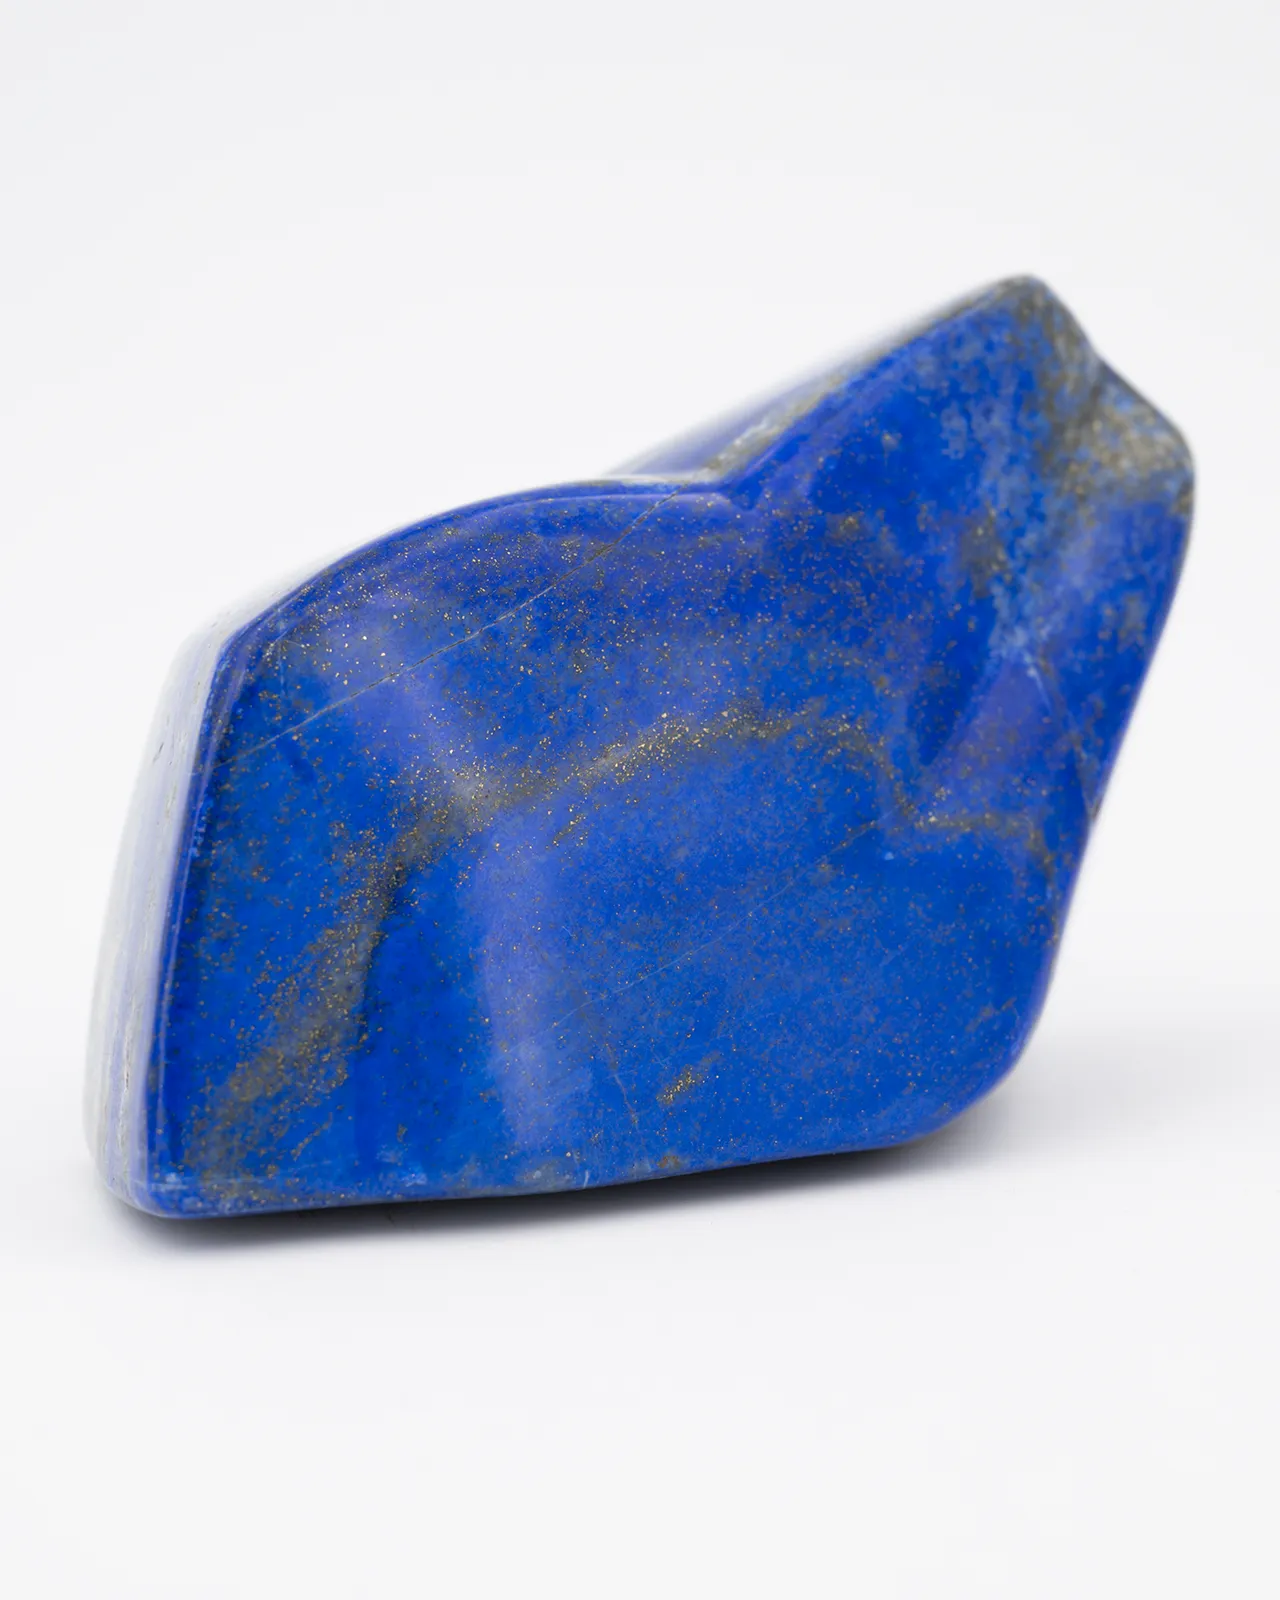 Lapis lazuli forme insolite pour poète, auteur écrivain.